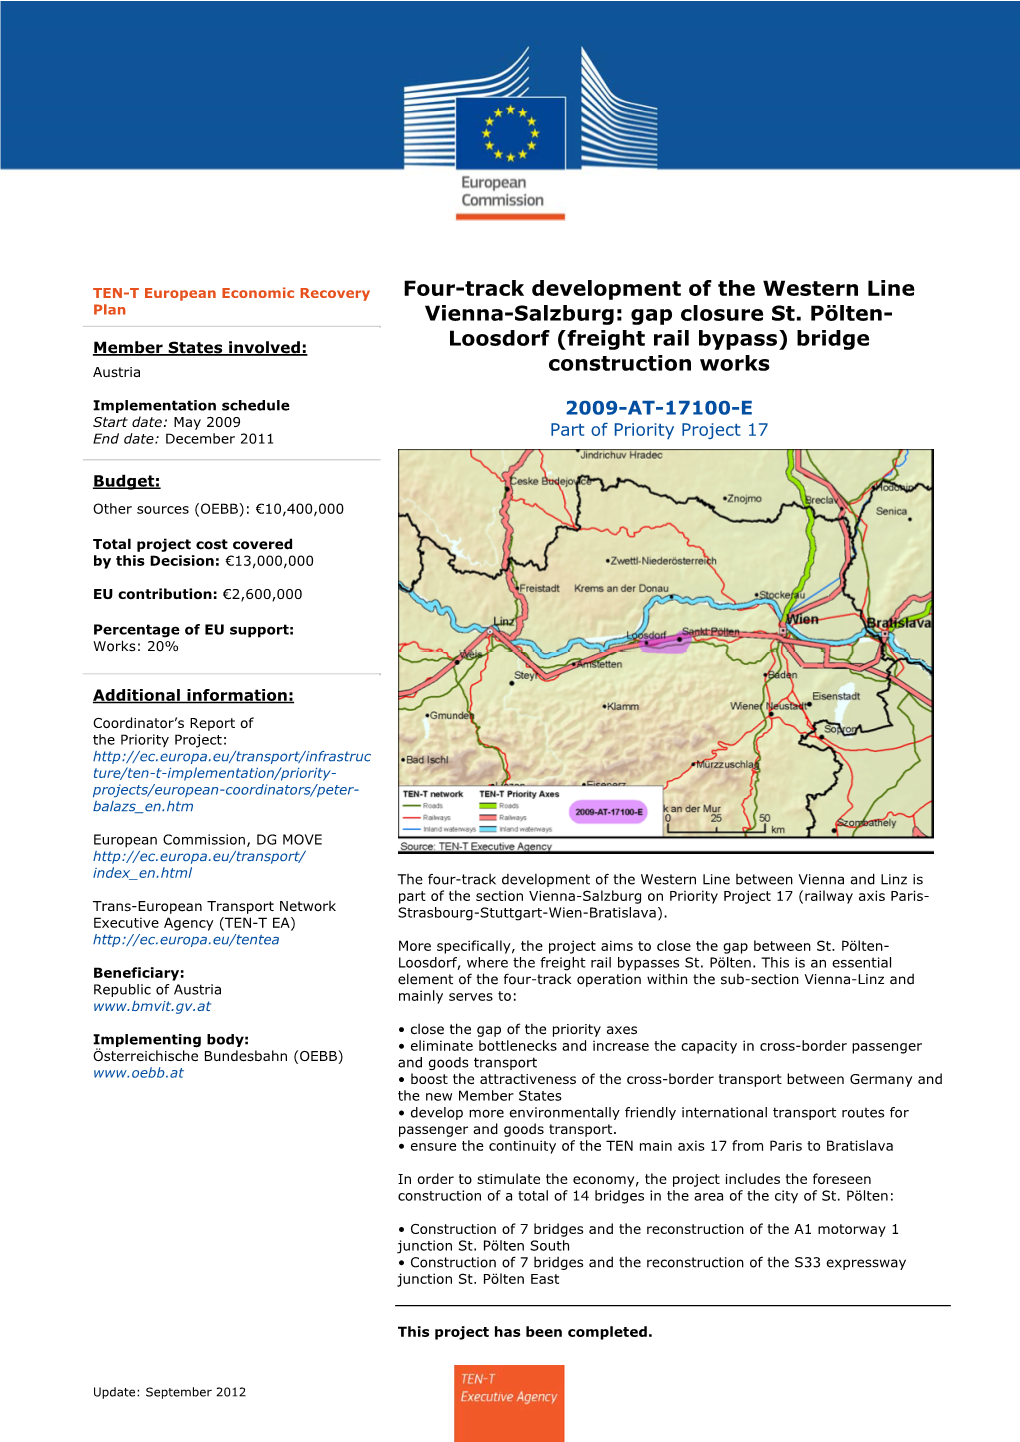 Four-Track Development of the Western Line Vienna-Salzburg: Gap Closure St. Pölten- Loosdorf (Freight Rail Bypass) Bridge Const